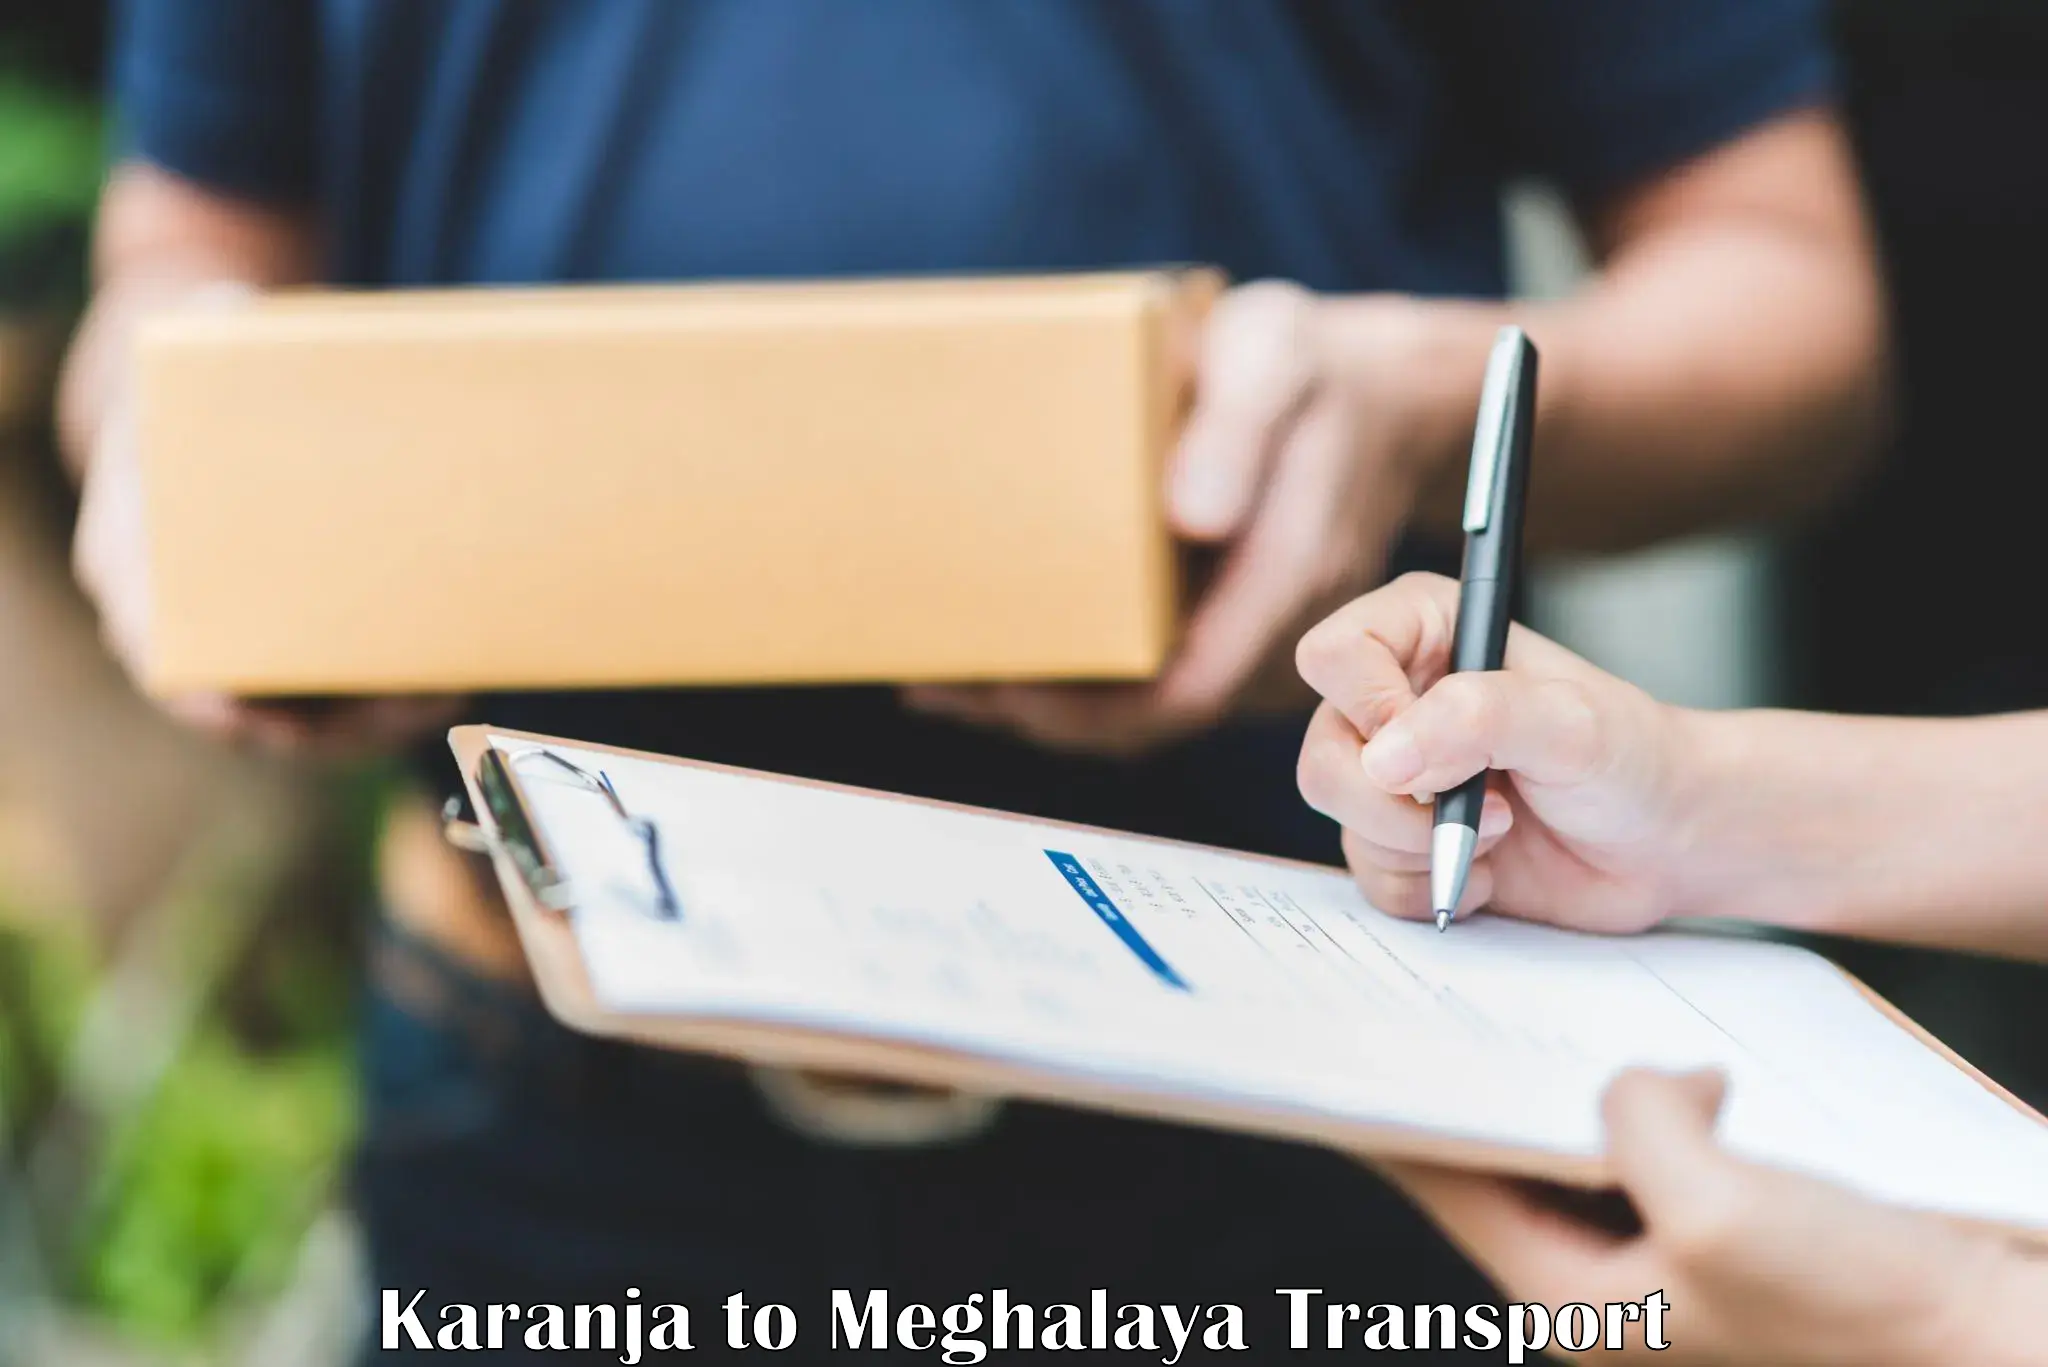 Furniture transport service Karanja to Dkhiah West